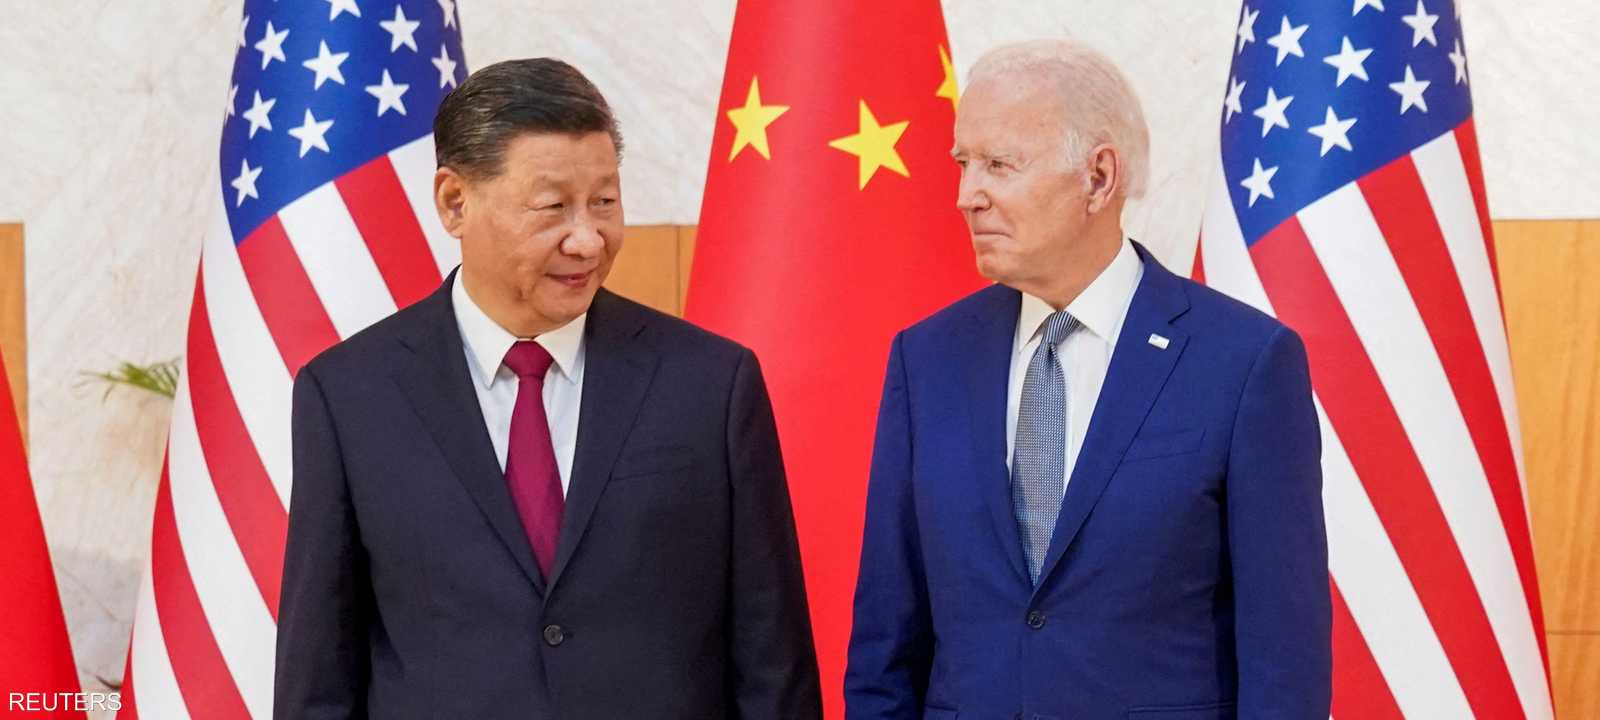 لقاء بين الرئيس الأميركي ونظيره الصيني في قمة العشرين